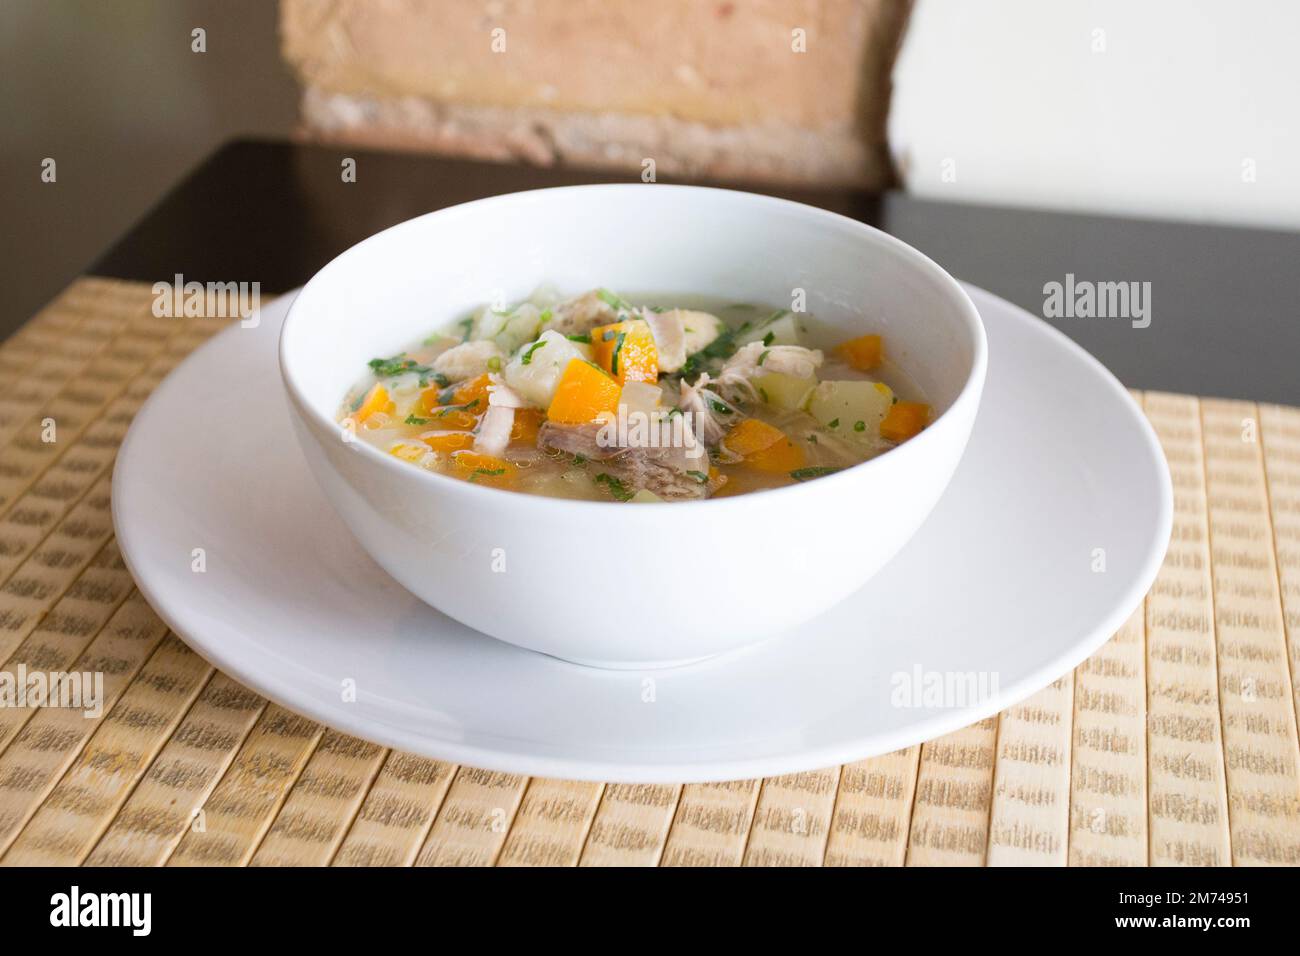 Soupe asiatique végétarienne. Recette traditionnelle de l'Asie du Nord avec des épices telles que le curry et des herbes telles que la coriandre. Banque D'Images